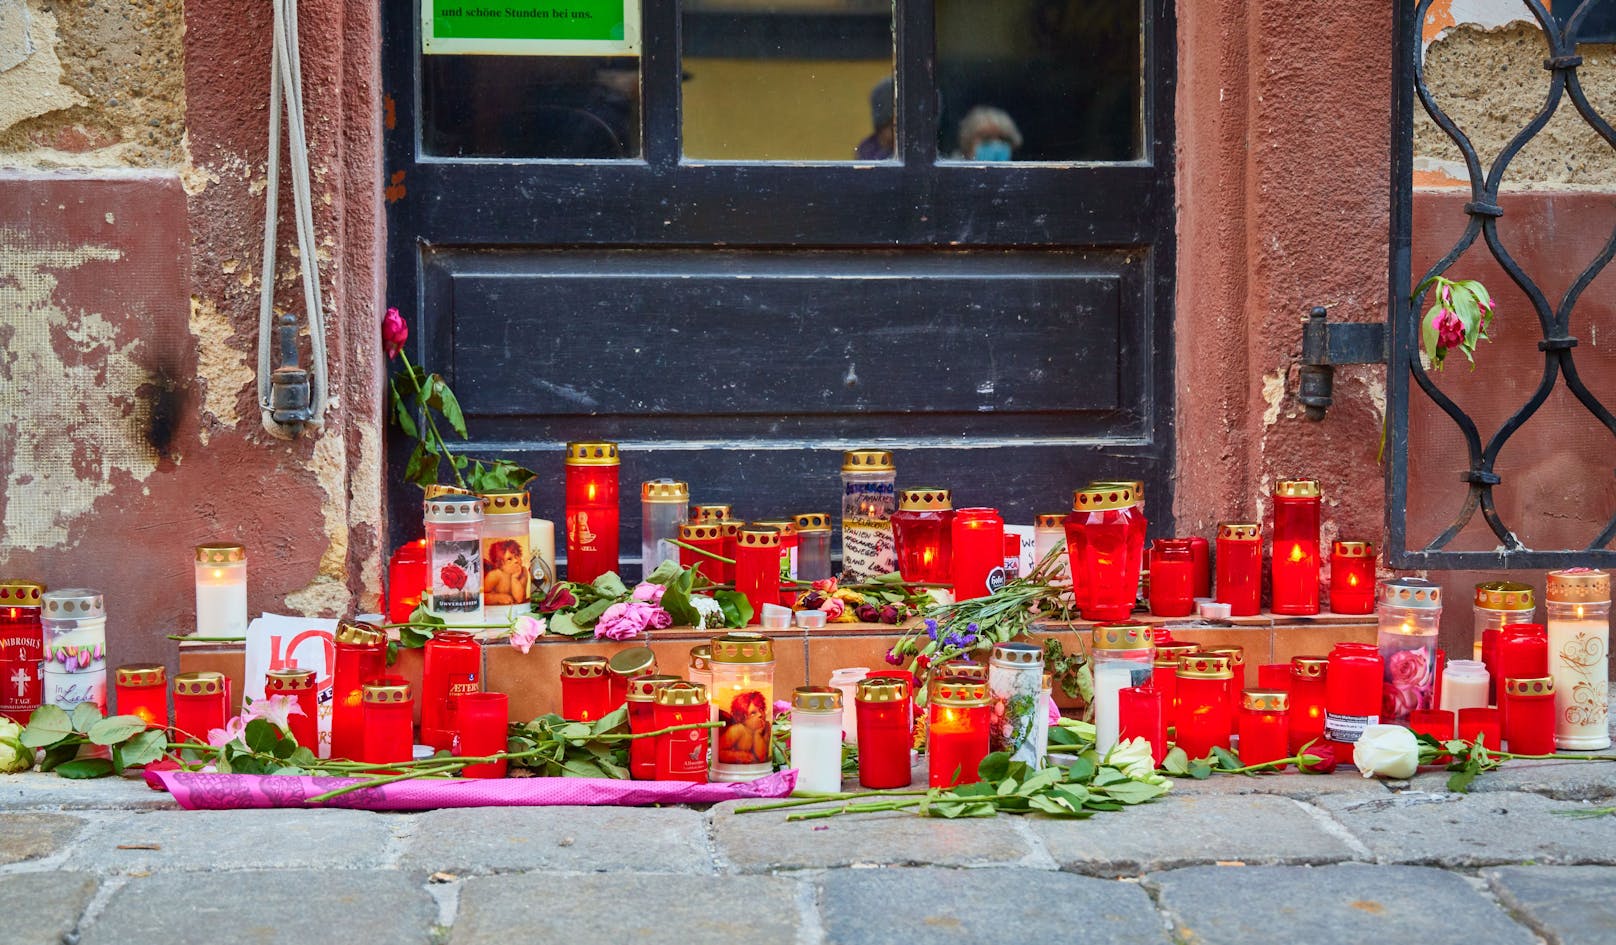 44 Personen haben nach dem Terror-Anschlag in der Wiener City im vergangenen November bisher Schmerzensgeld ausbezahlt bekommen.